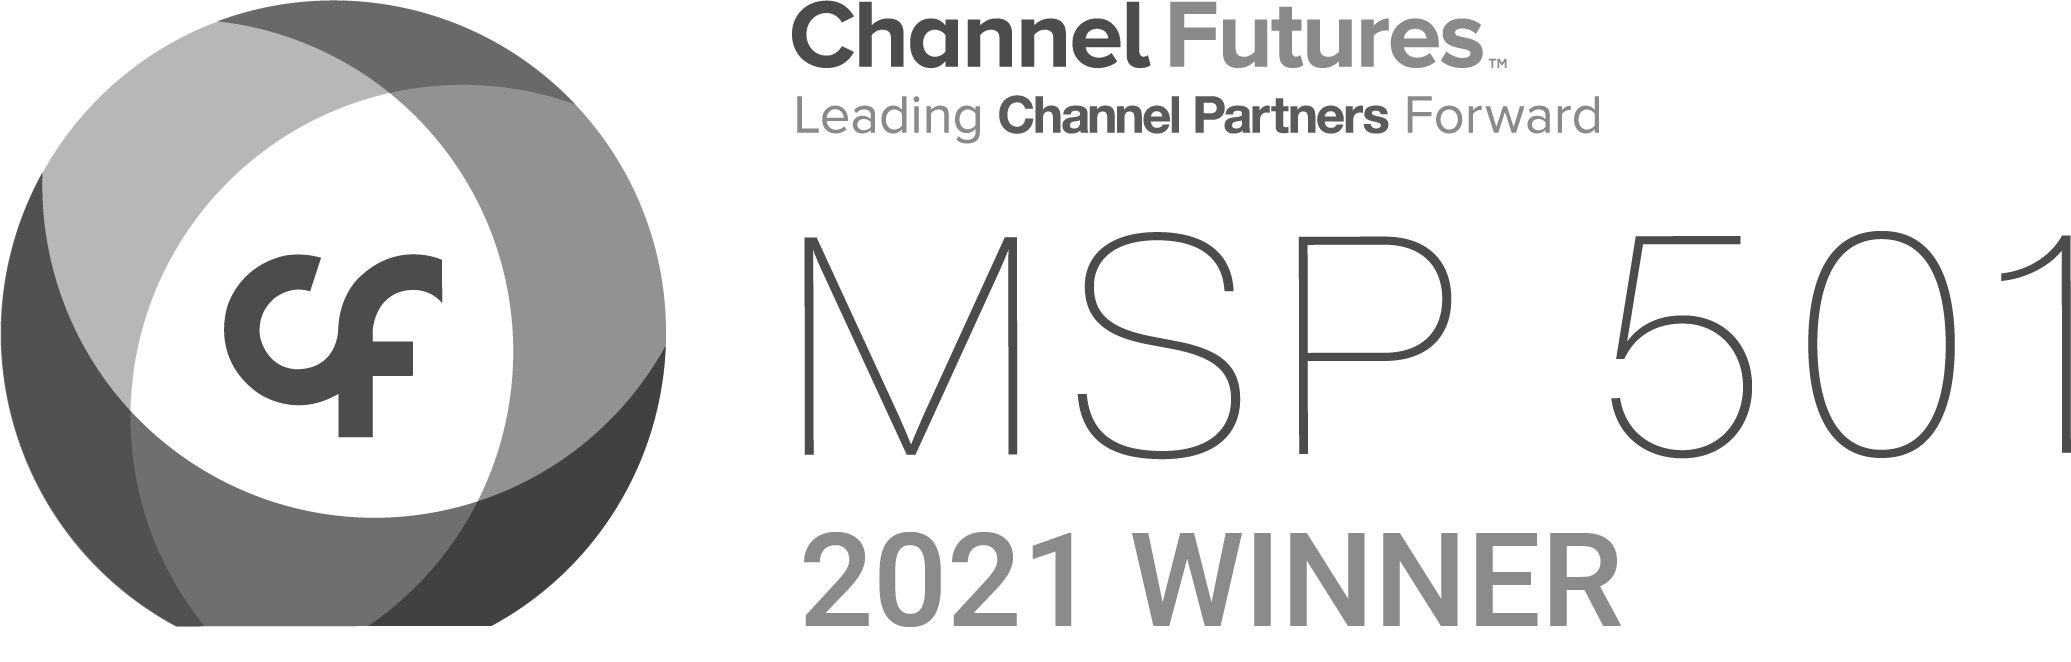 CP-1381-MSP-501-Winner-Logo-2021_V1-min